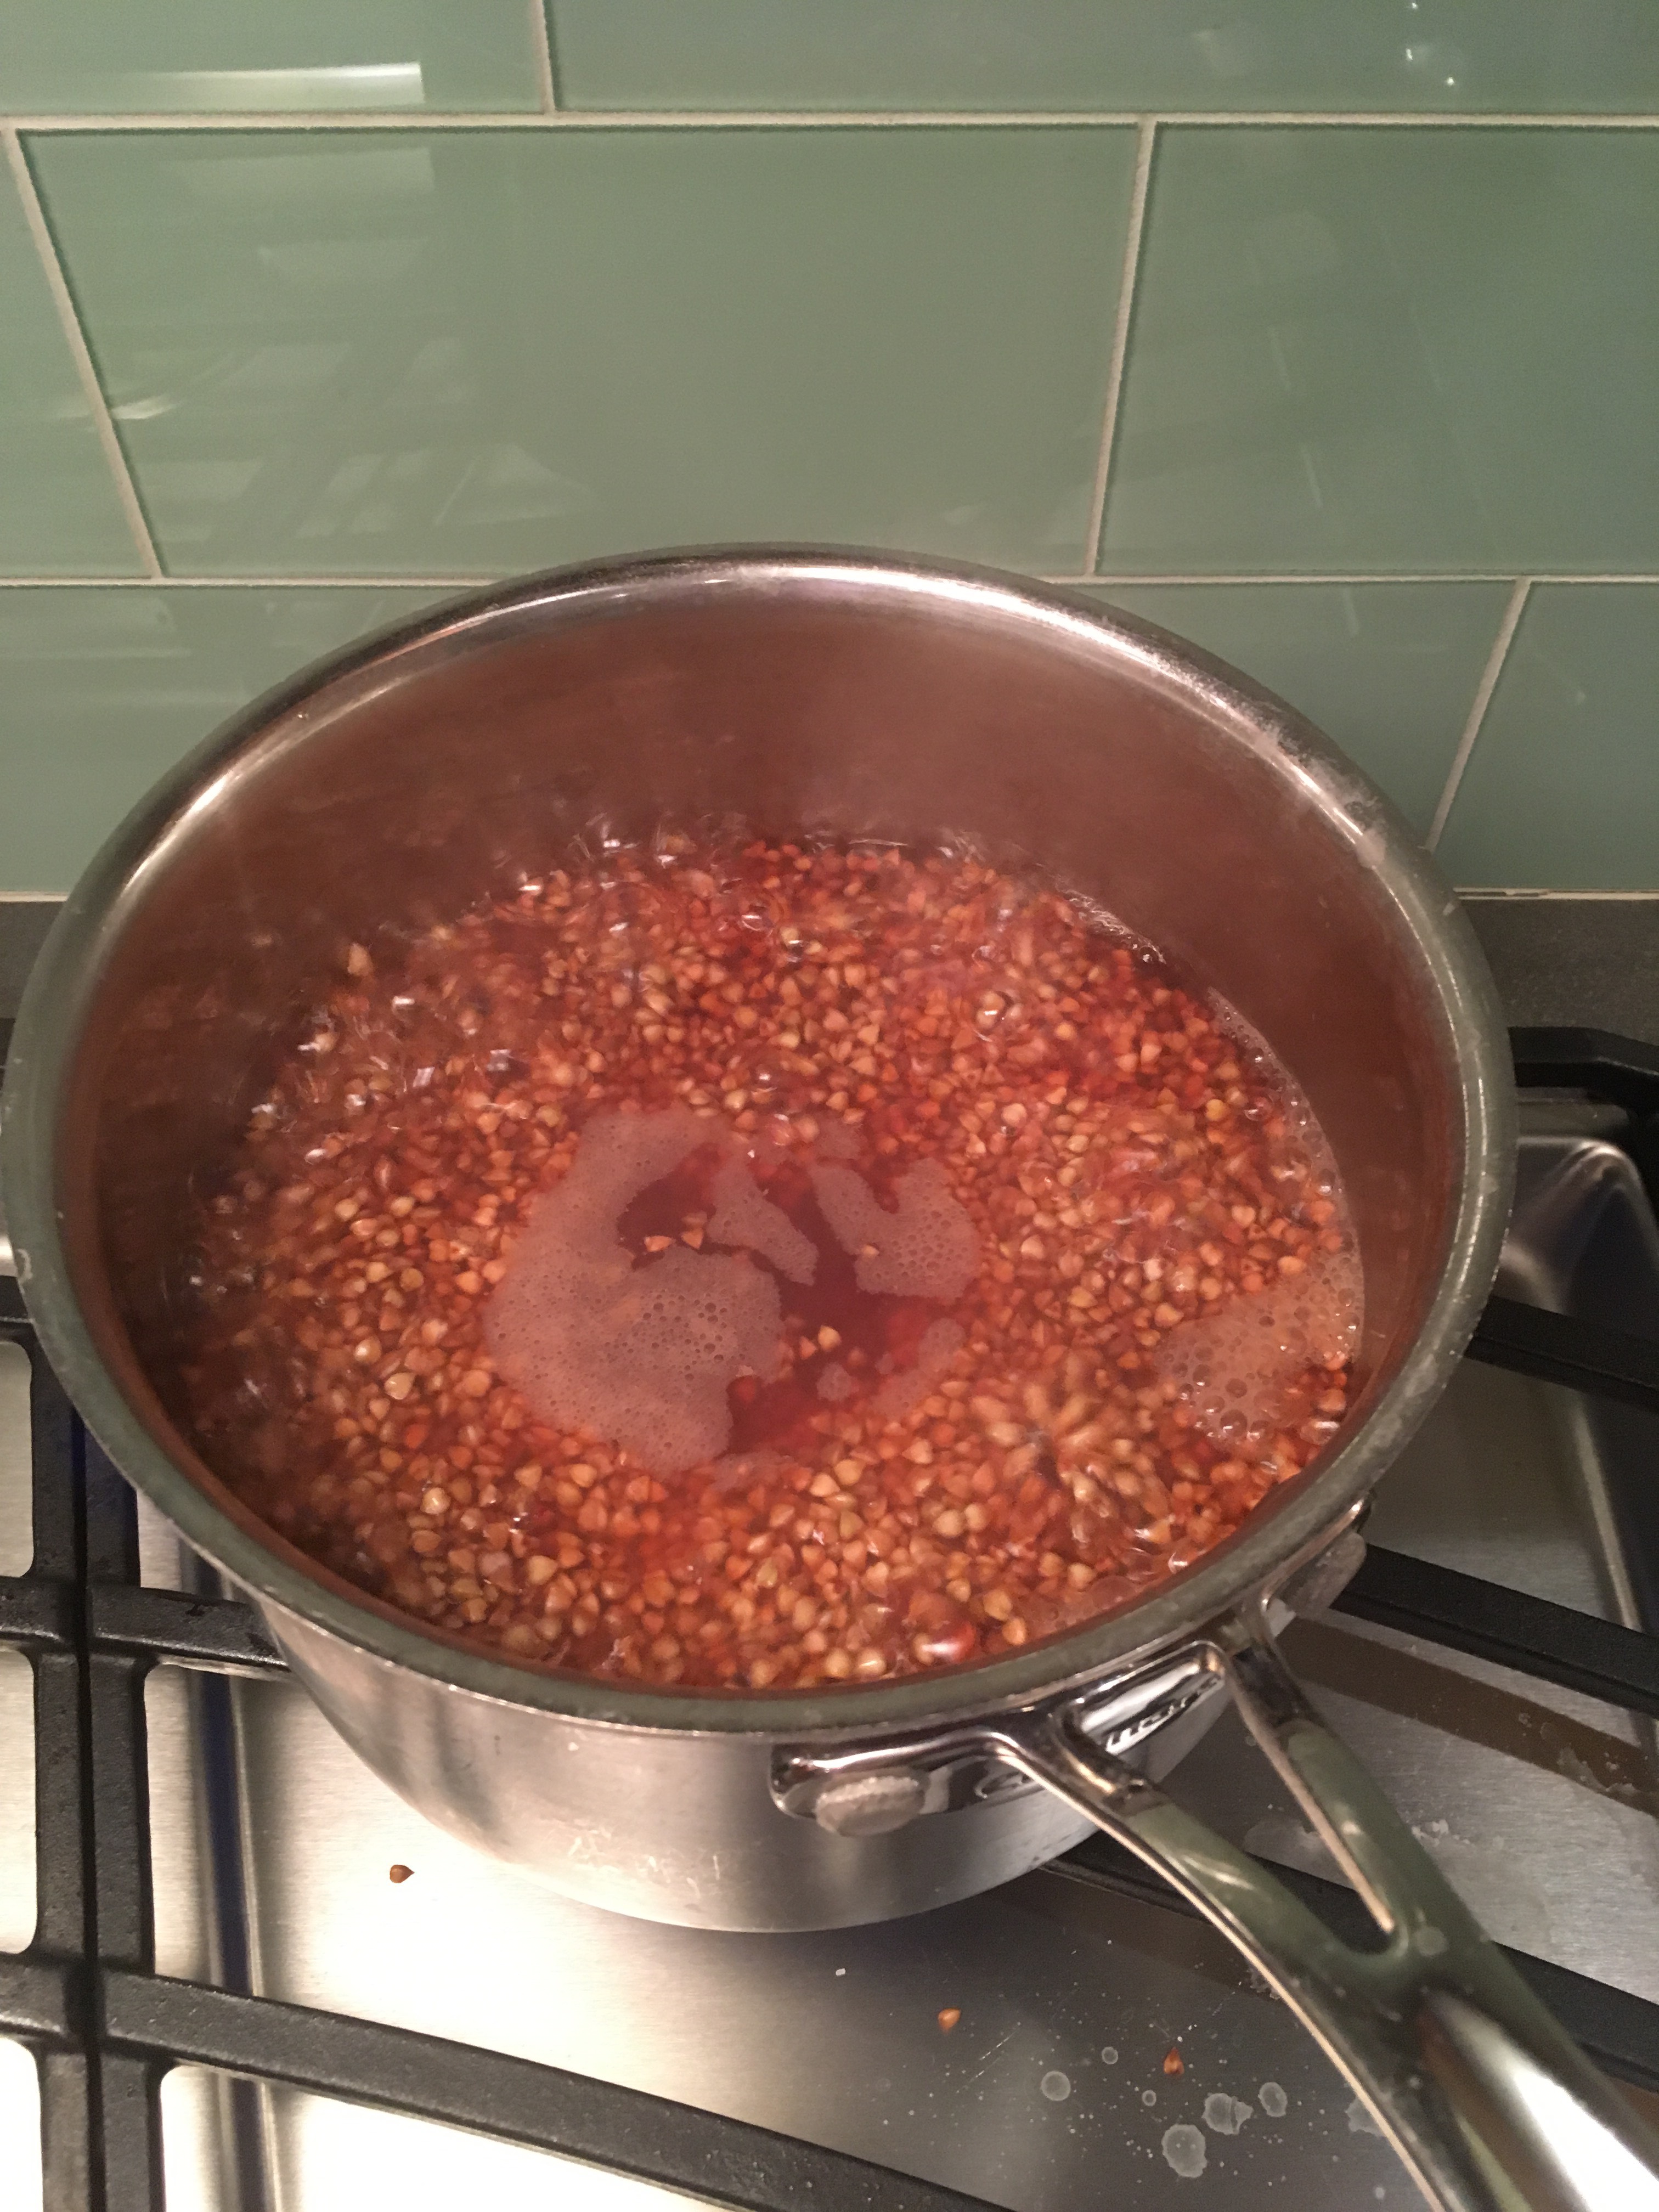 Buckwheat groats boiling in water